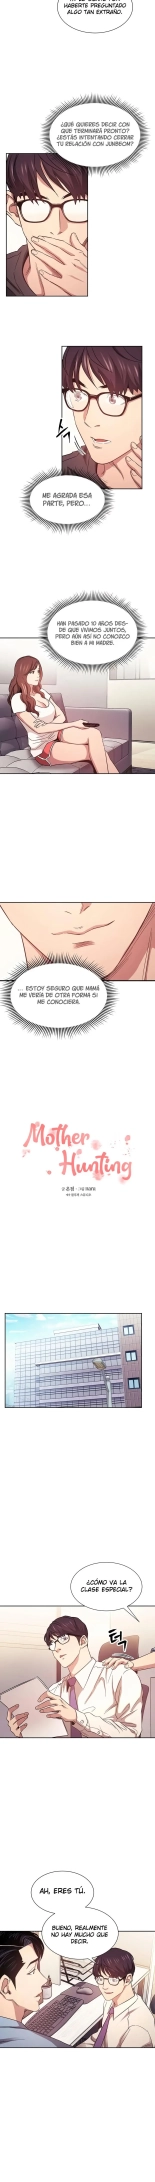 Mother Hunting【41~60】 : página 18